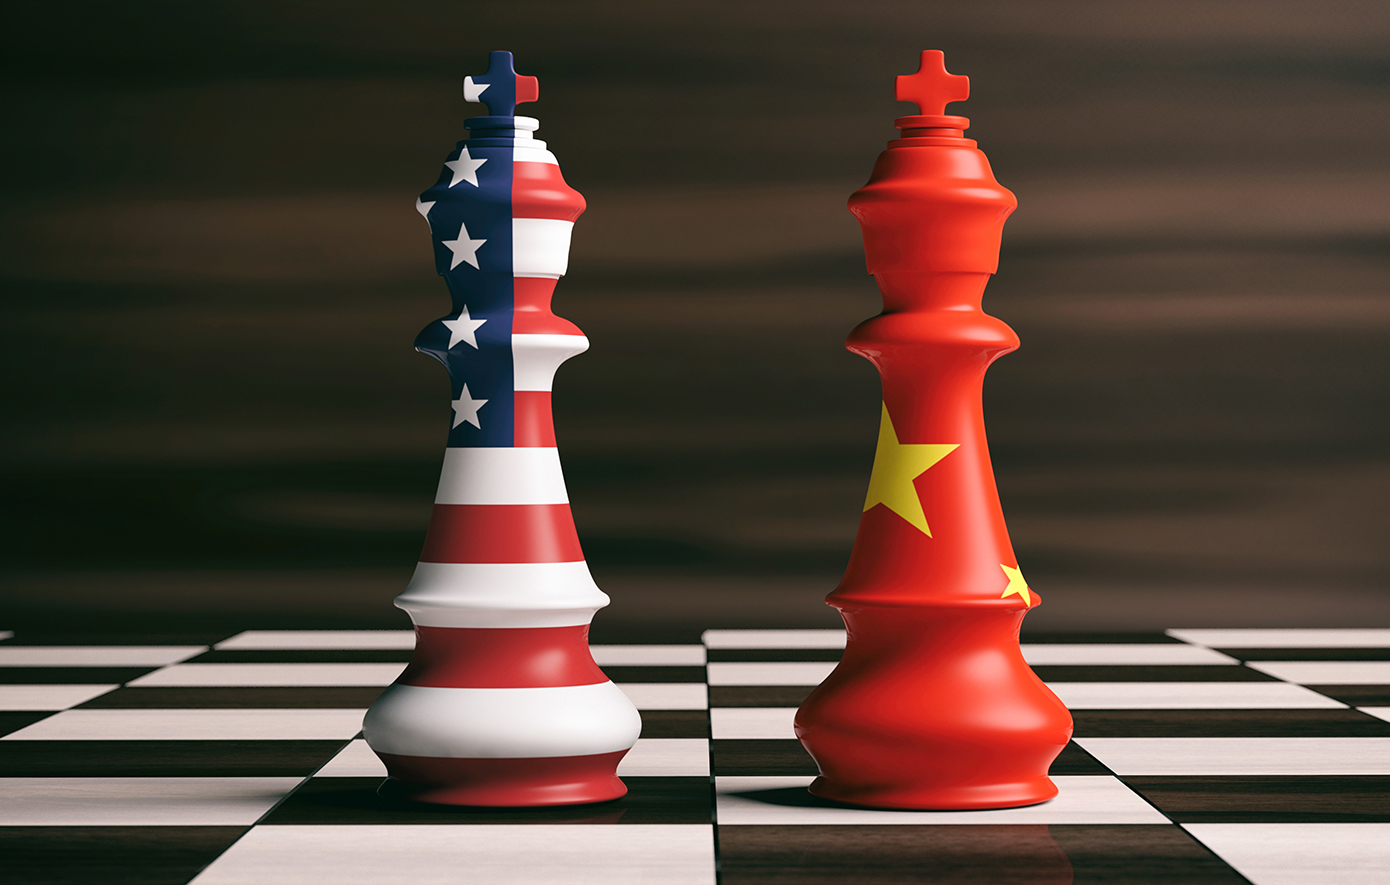 Οι ΗΠΑ επιδιώκουν μια εκδοχή του ΝΑΤΟ στην Ασία για να διατηρήσουν την ηγεμονία τους, υποστηρίζει Κινέζος αξιωματούχος